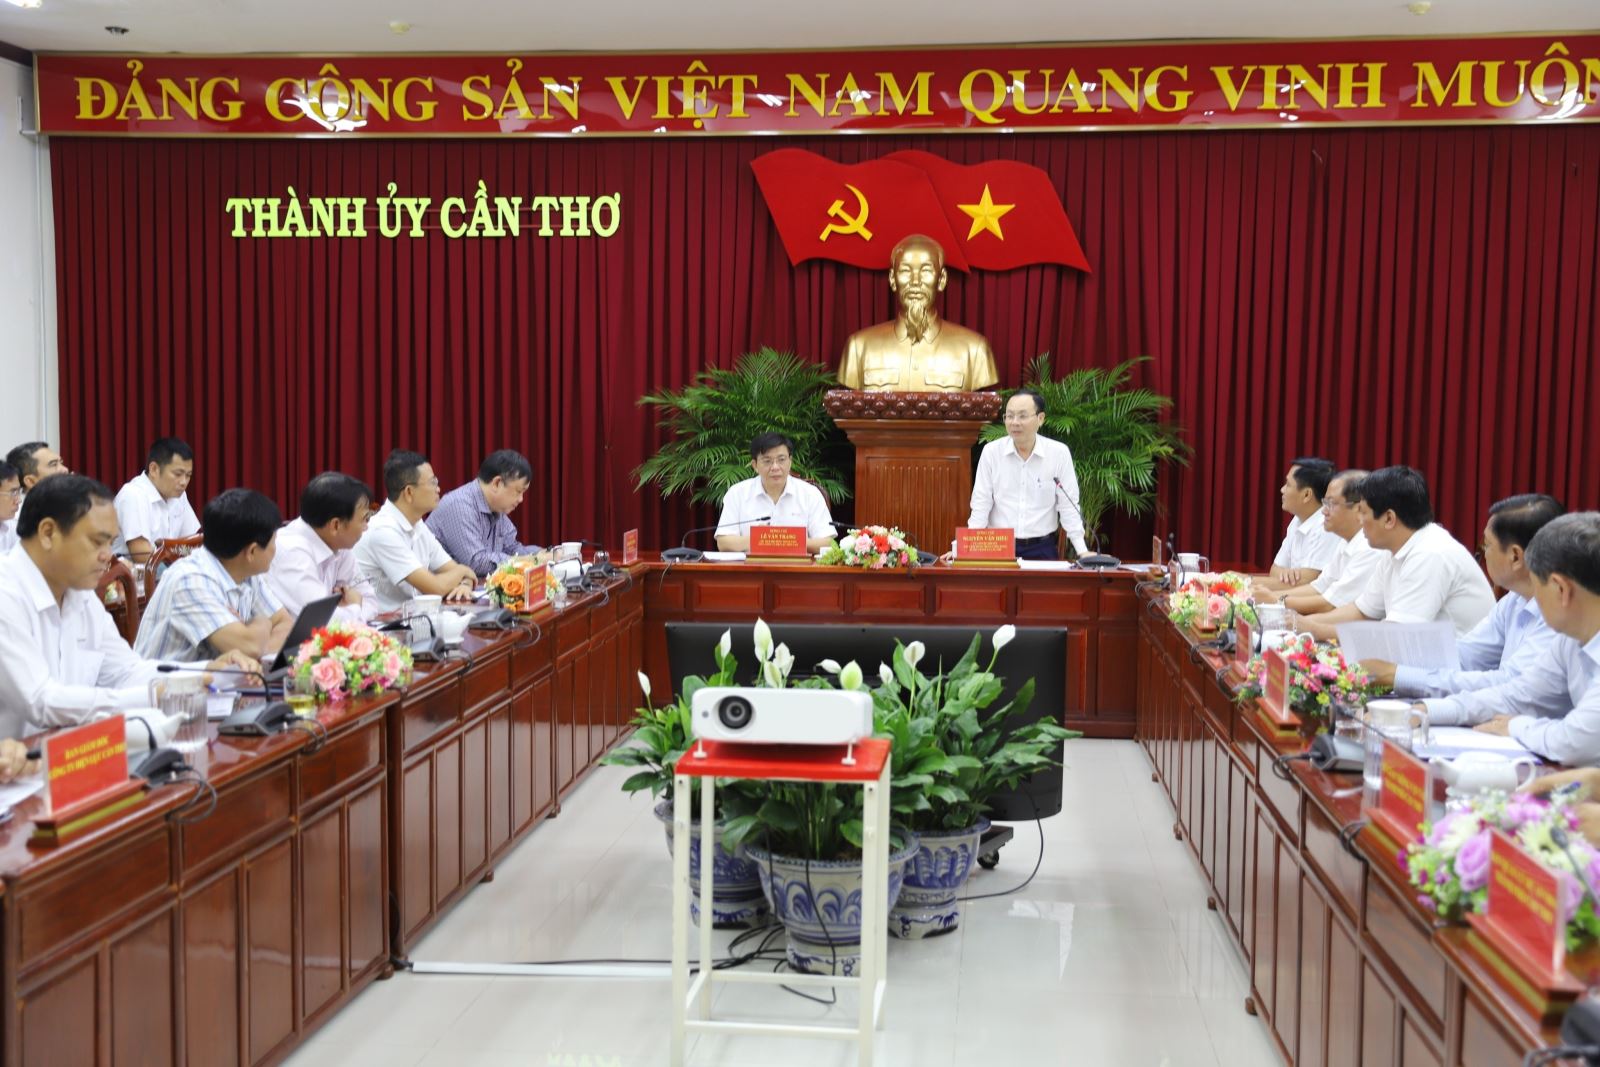 Ông Nguyễn Văn Hiếu, Ủy viên dự khuyết ban Chấp hành Trung ương Đảng, Bí thư Thành ủy Thành phố Cần Thơ phát biểu kết luận buổi làm việc.